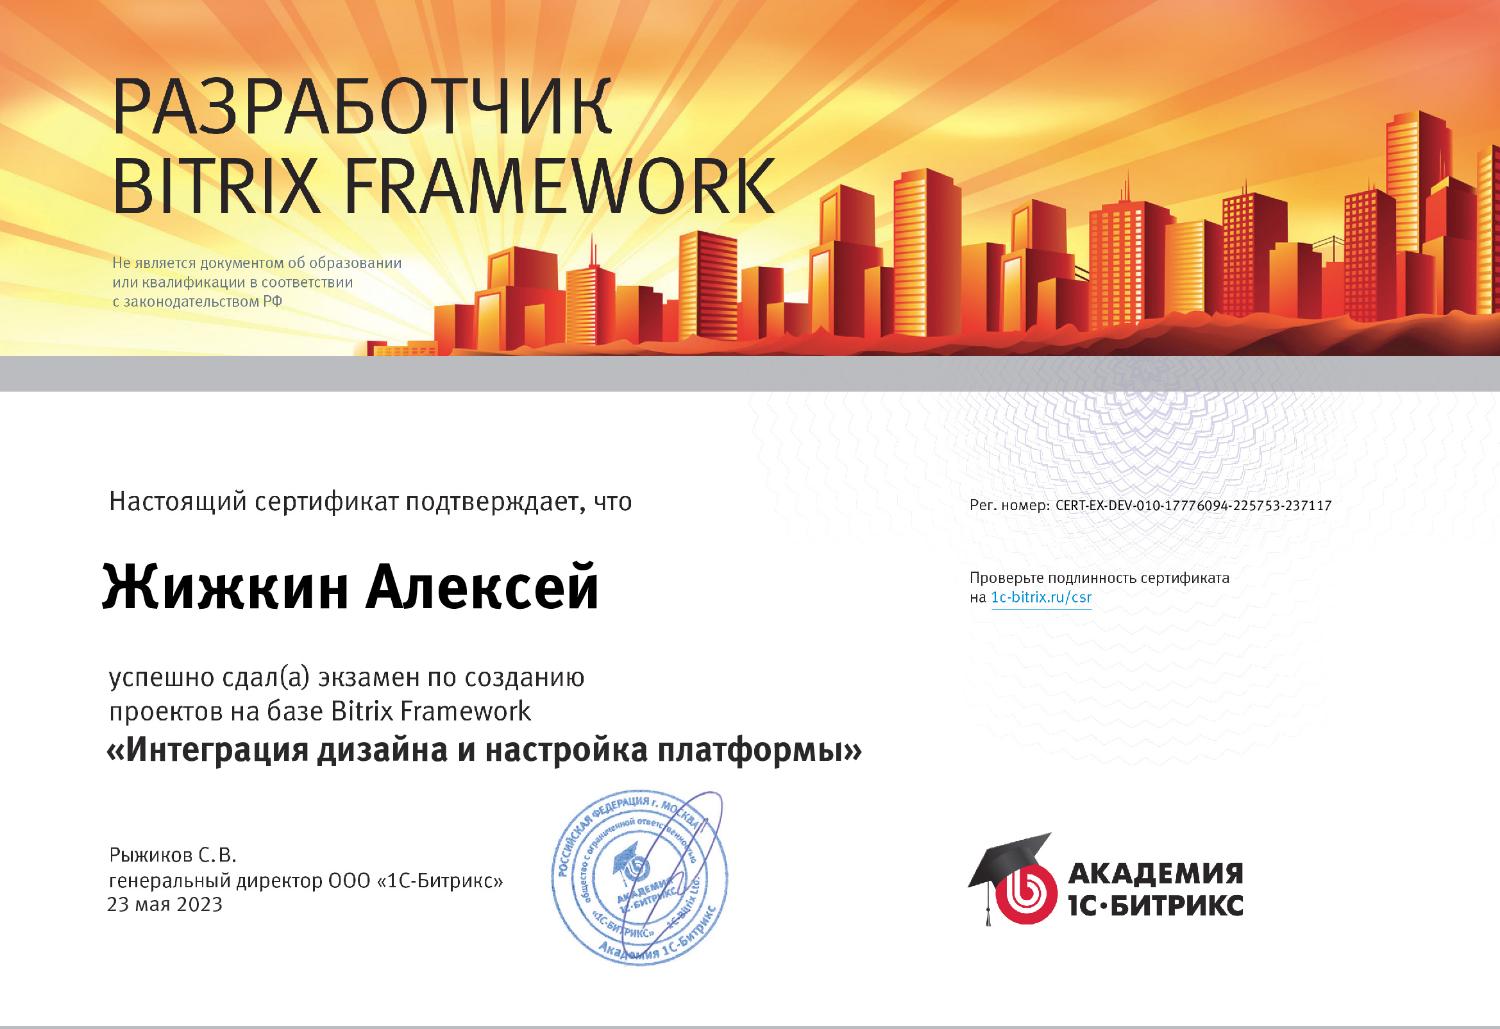 Наша копилка пополнилась сертификатом разработчика на базе Bitrix Framework